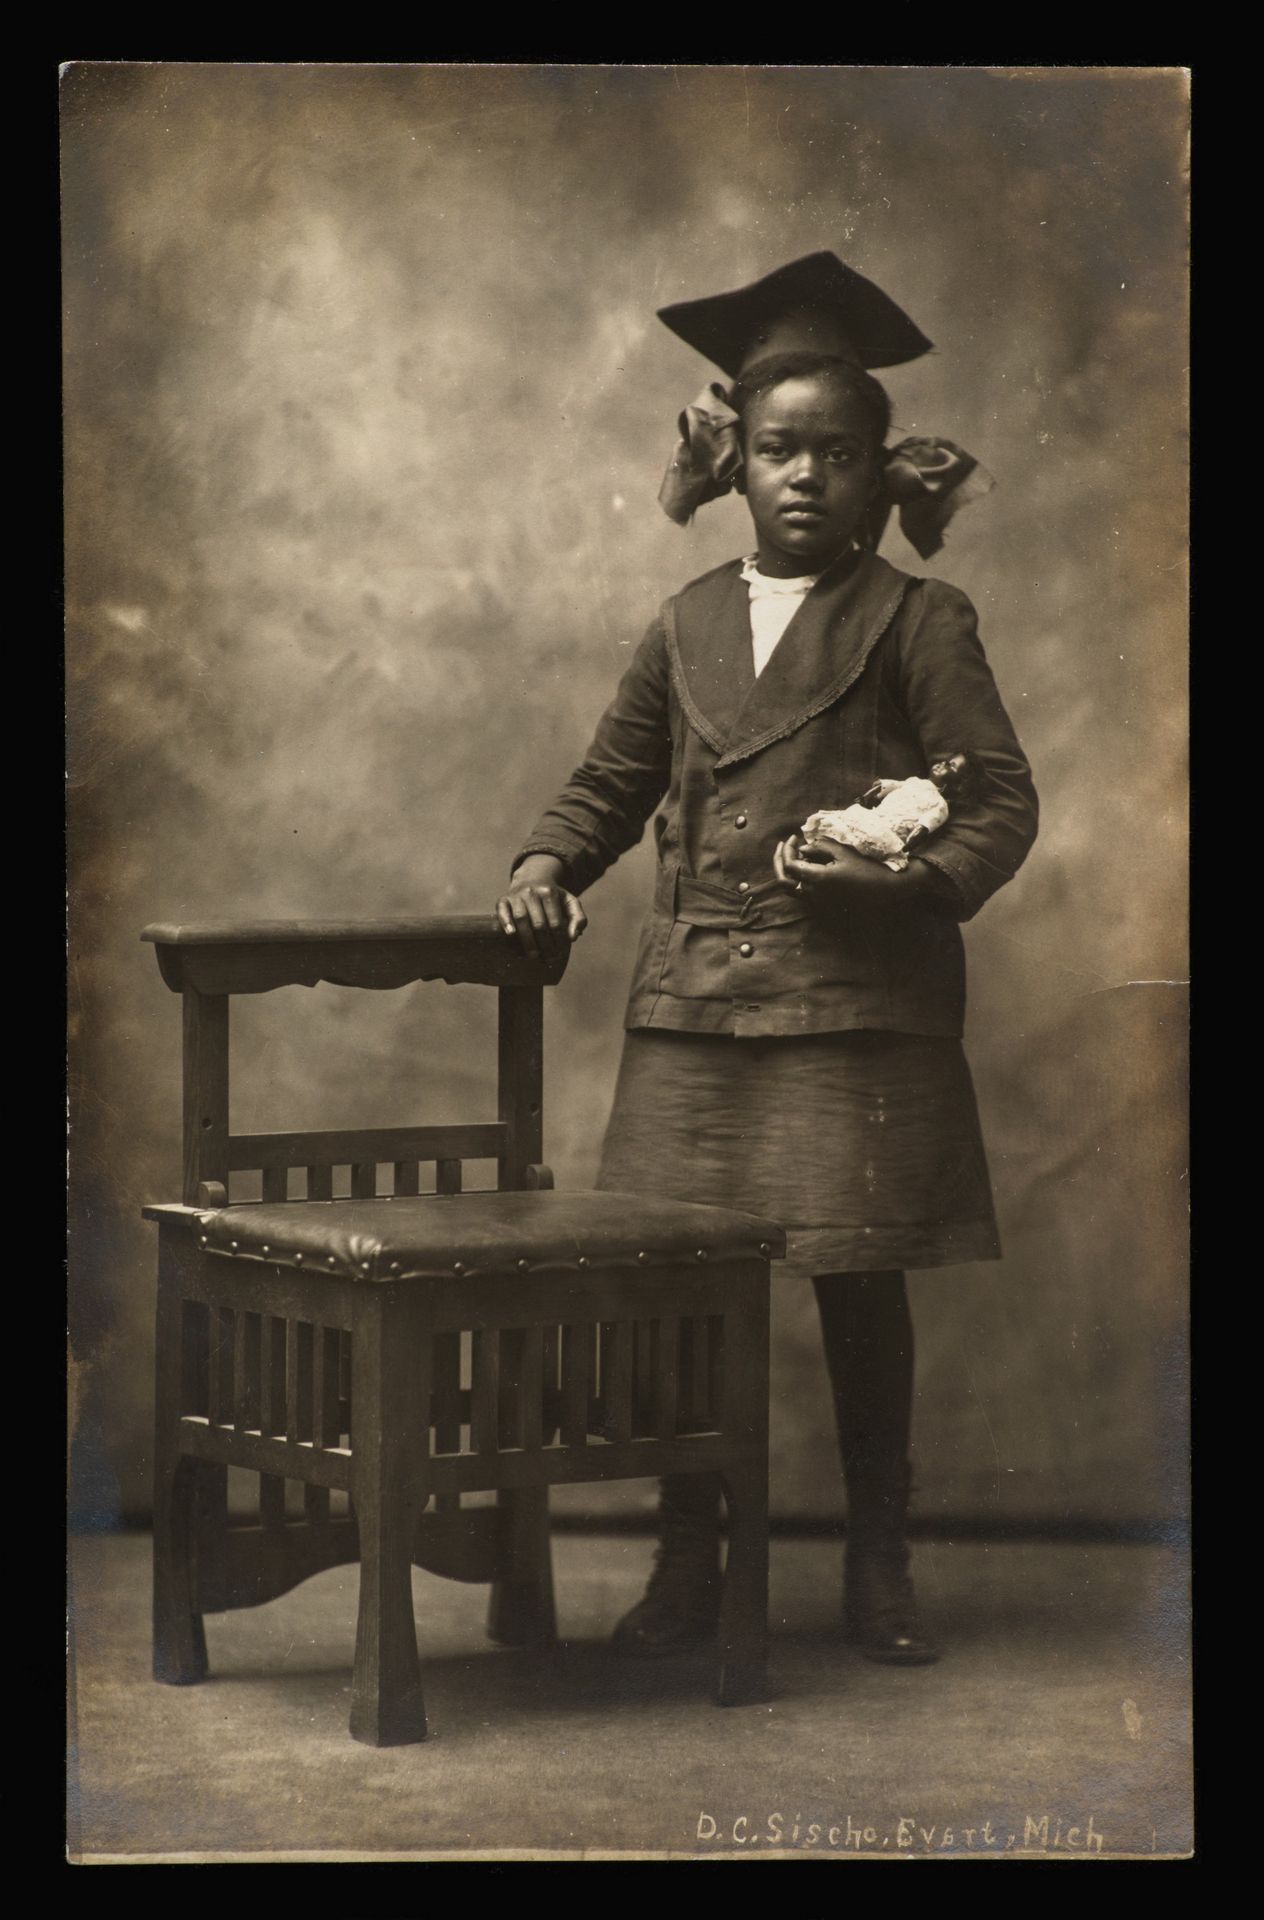 D.C. Sischo, Photo postcard, Evart, MI, 1914–15